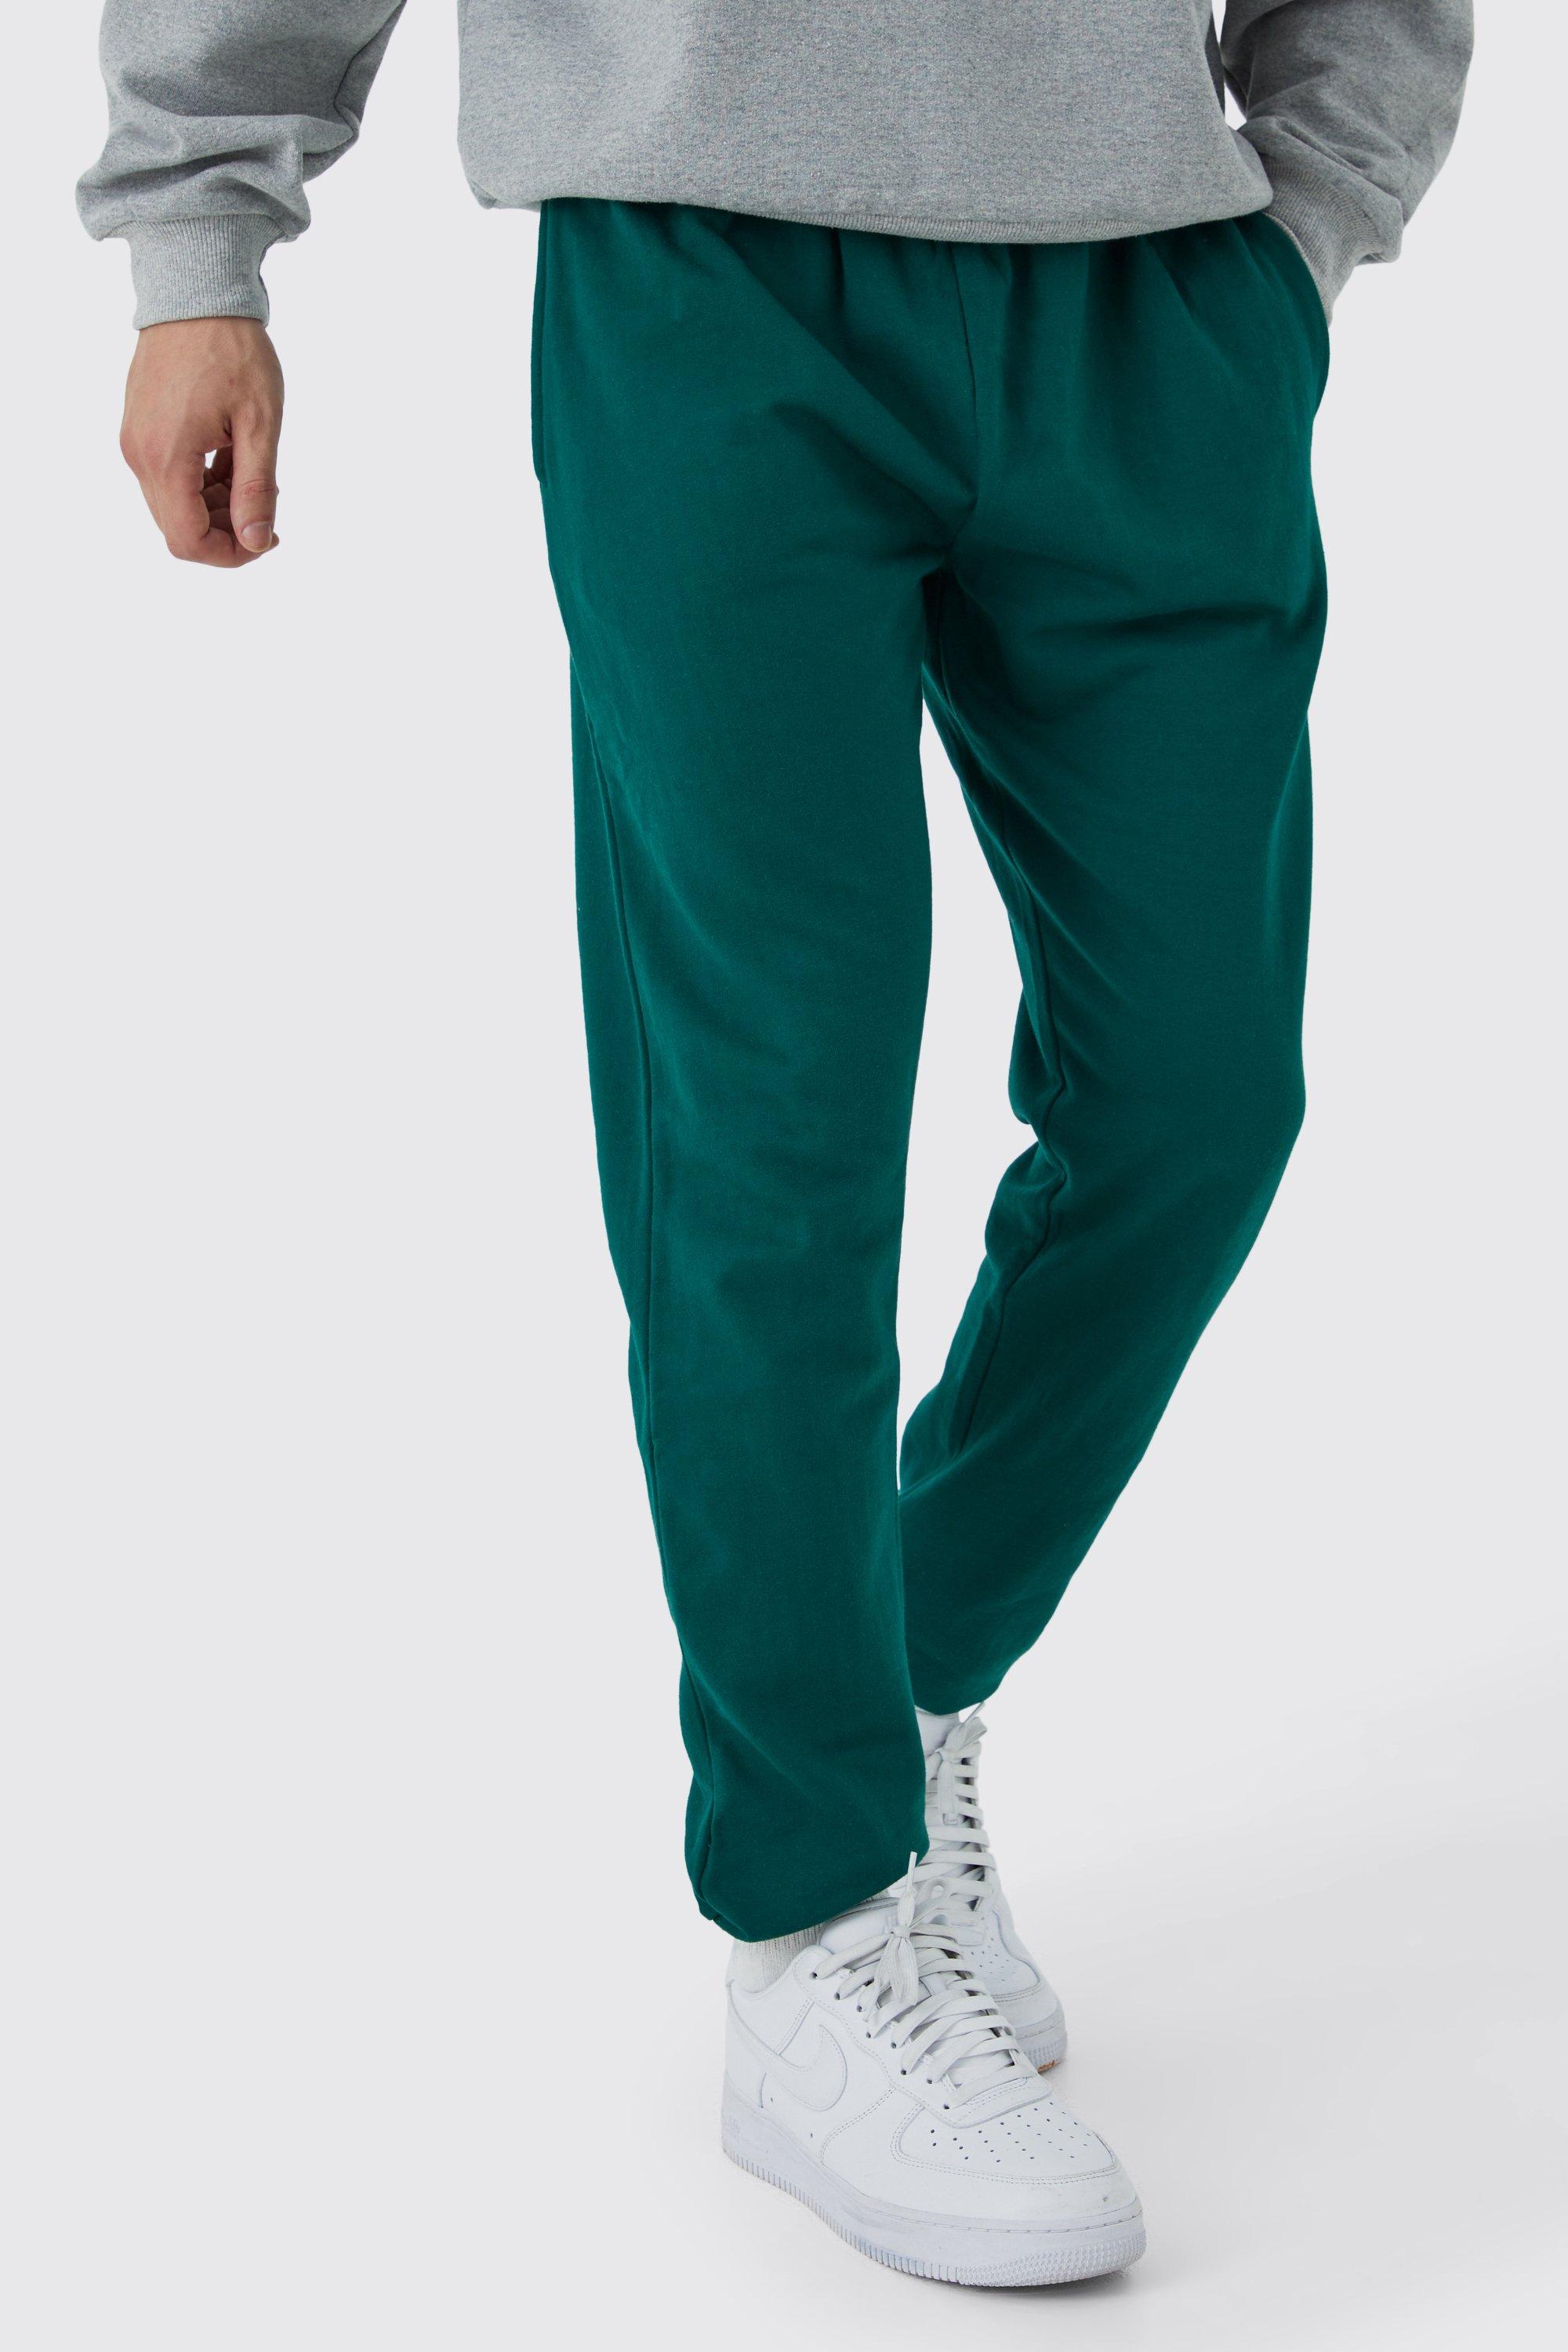 Image of Pantaloni tuta Tall Basic Core Fit, Verde